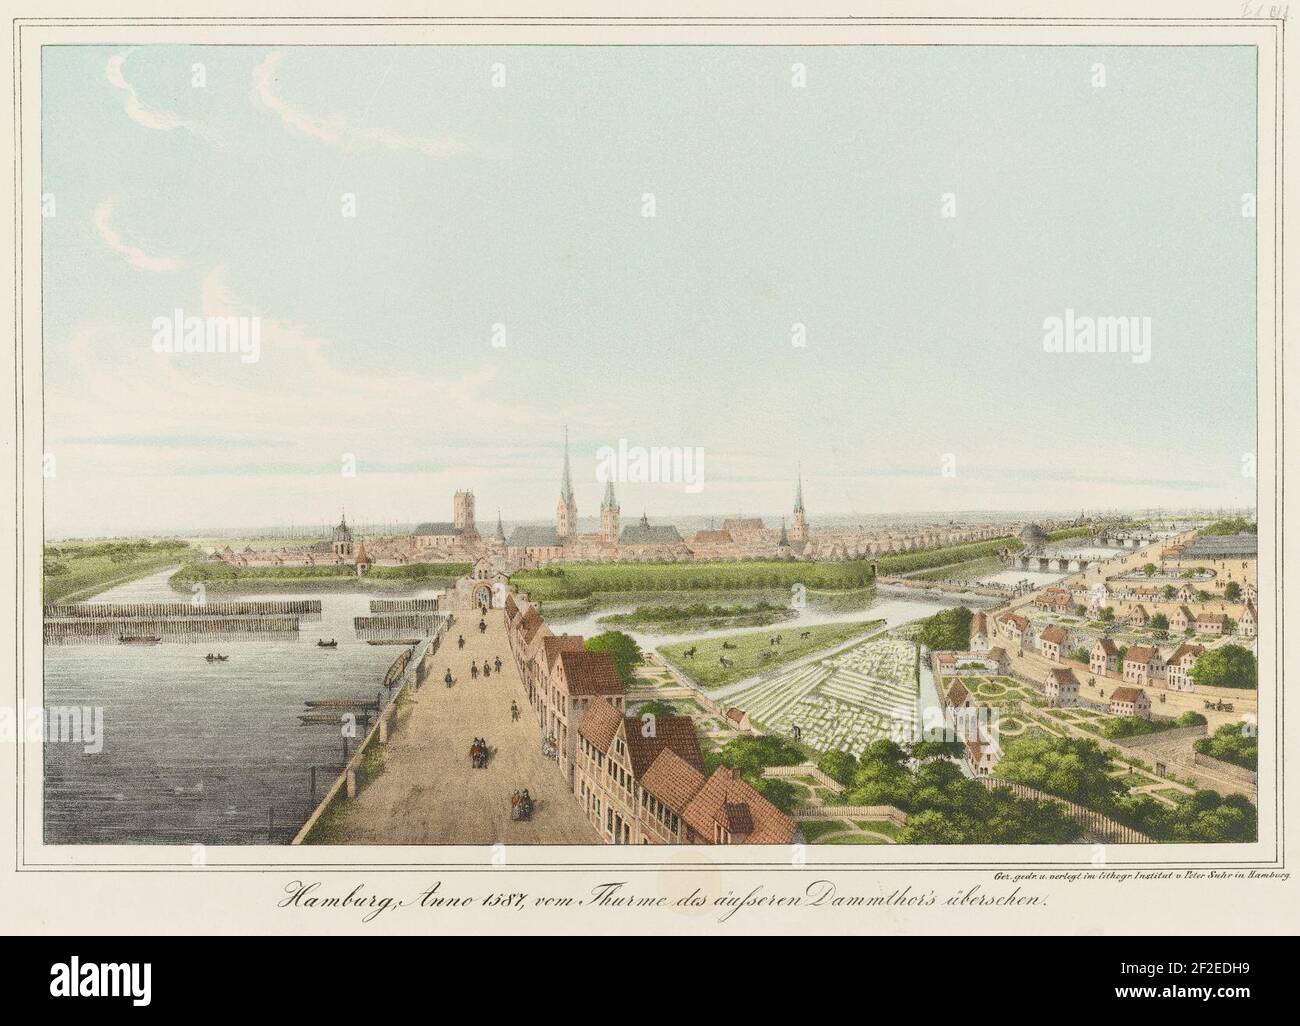 Hamburg, Anno 1587 vom Thurme des äußeren Dammthors übersehen (1838). Stock Photo